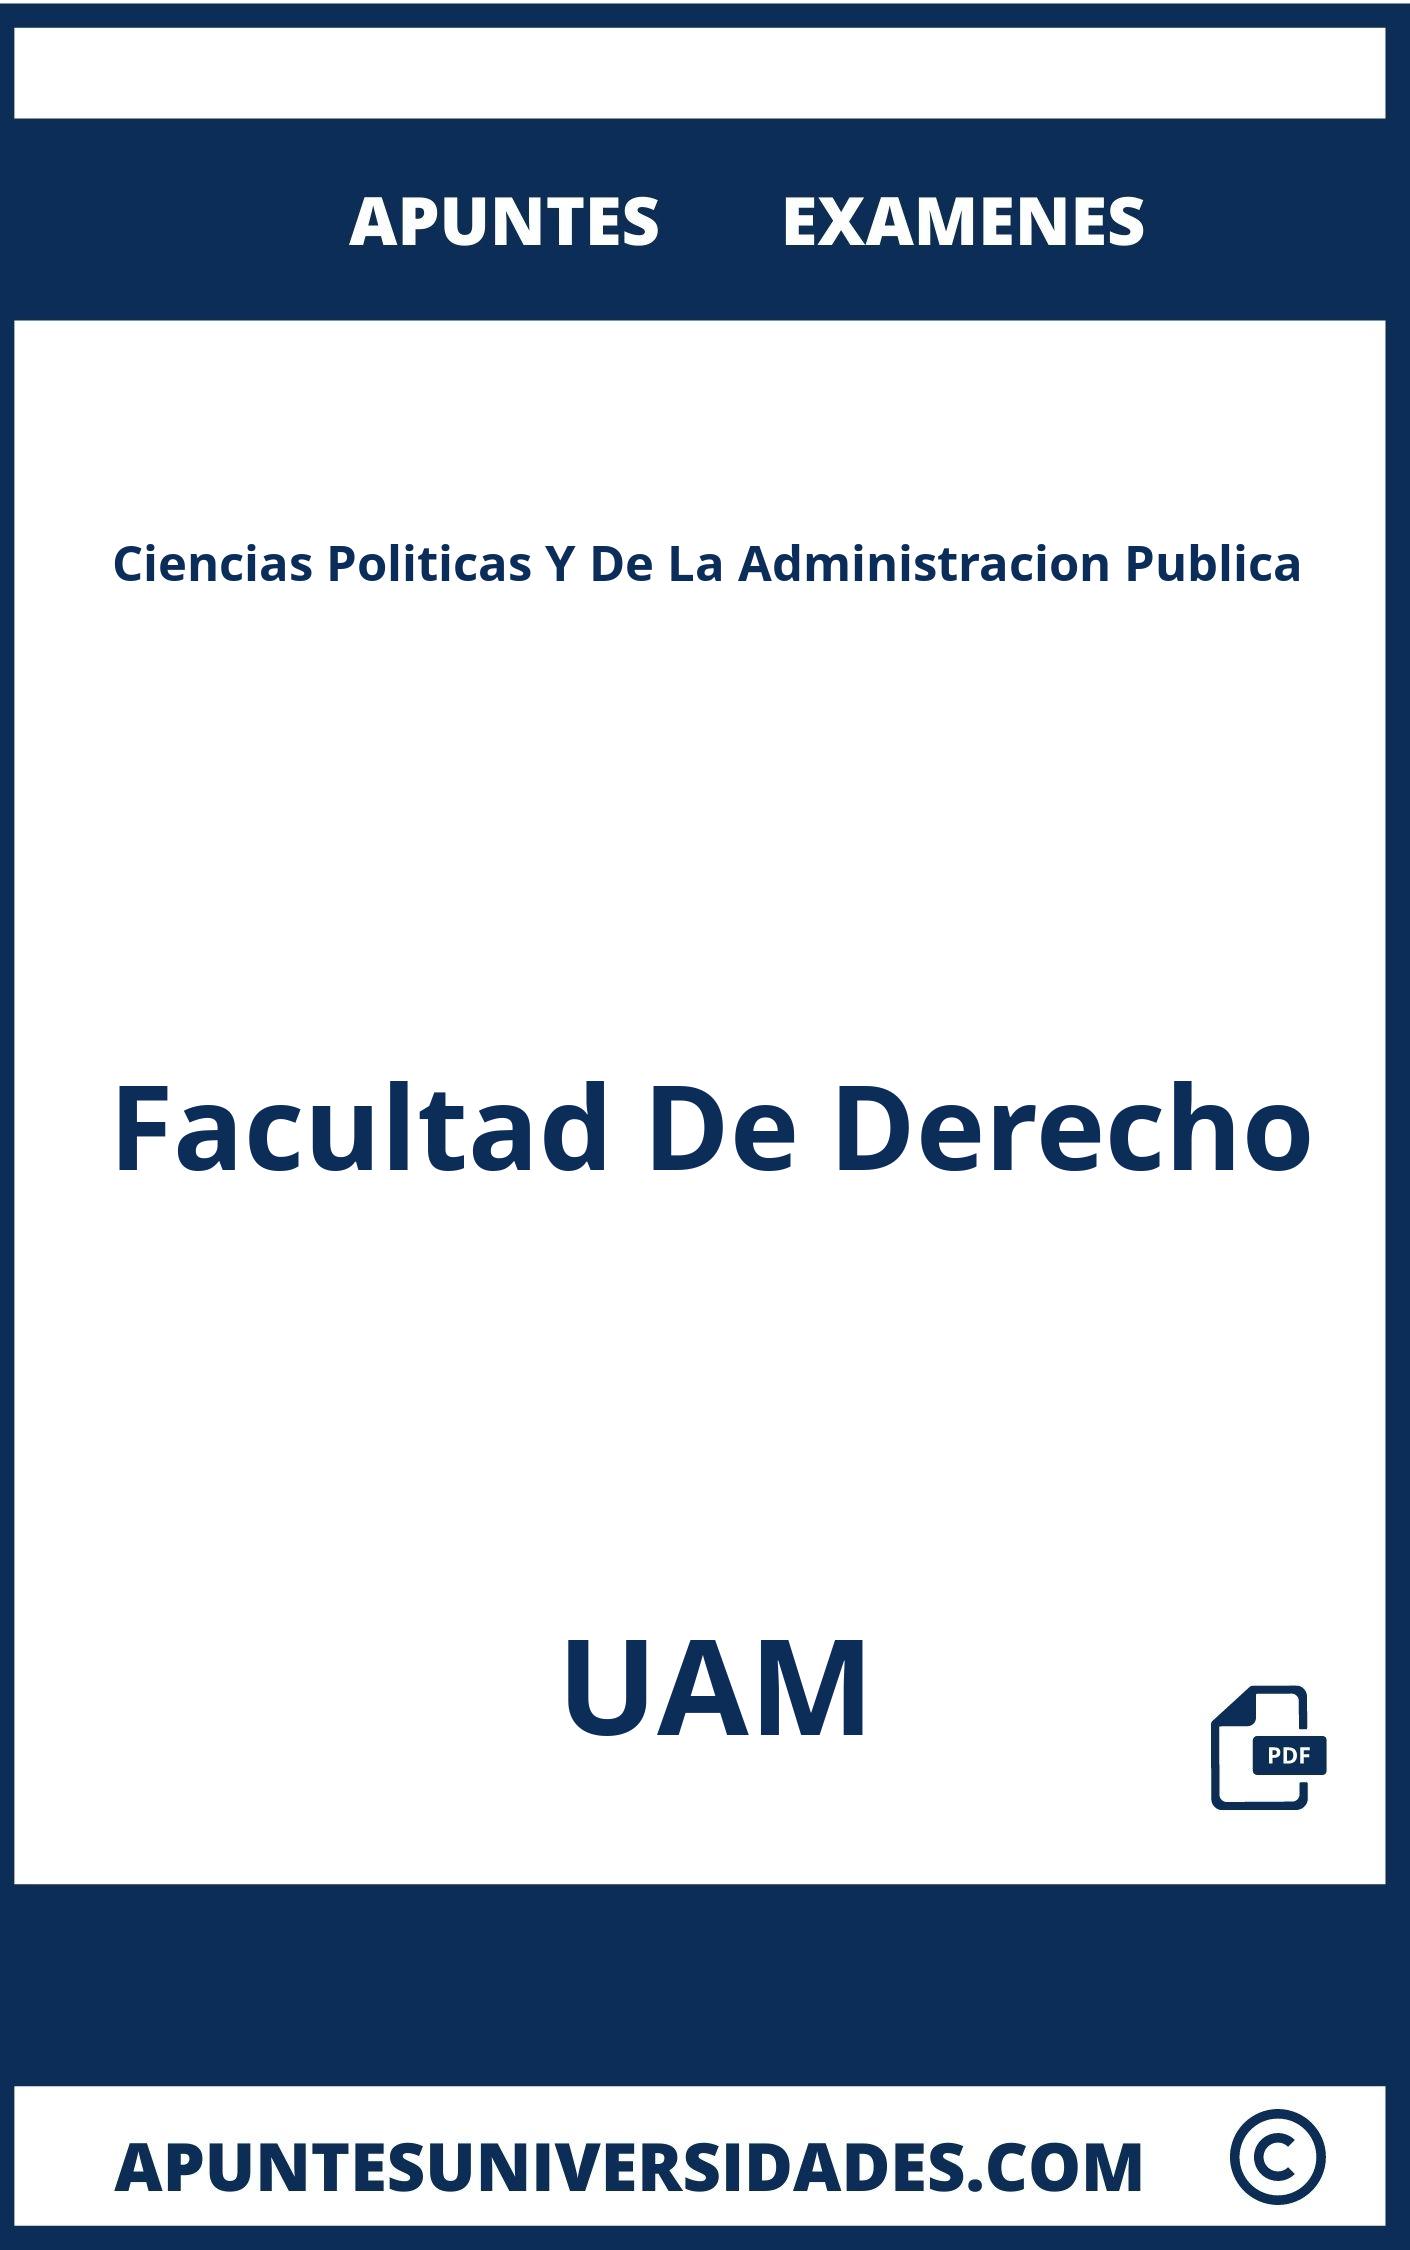 Examenes Apuntes Ciencias Politicas Y De La Administracion Publica UAM